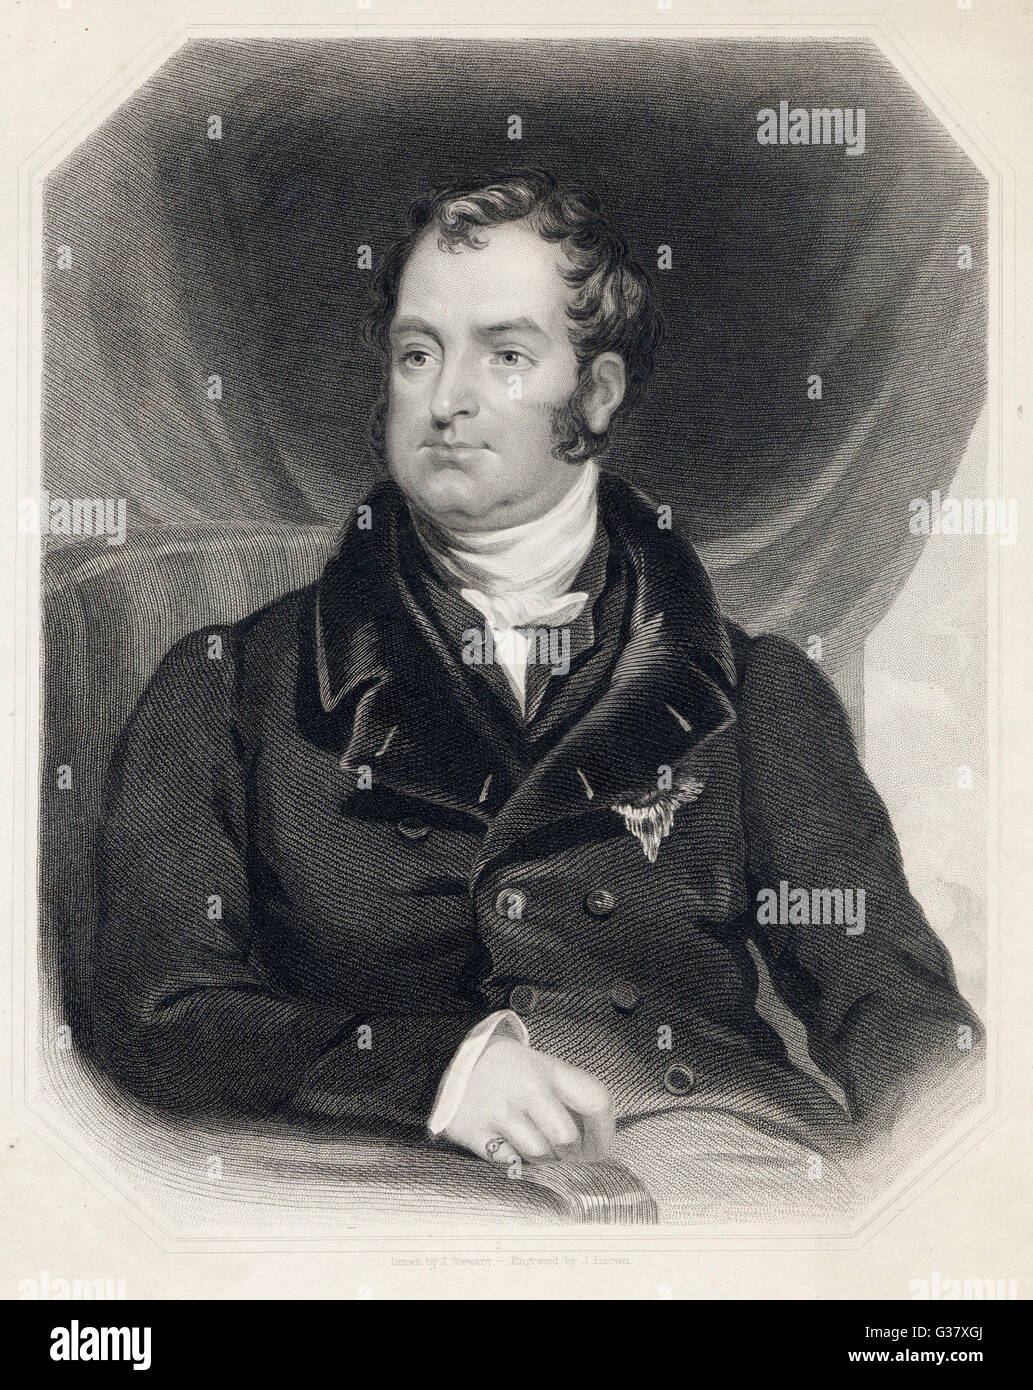 JOHN CHARLES SPENCER, 3. Earl SPENCER; zuvor Viscount ALTHORP. Staatsmann, der trotz seiner Vorliebe für Land Beschäftigungen eine wertvolle politische Karriere verfolgt.     Datum: 1782-1845 Stockfoto